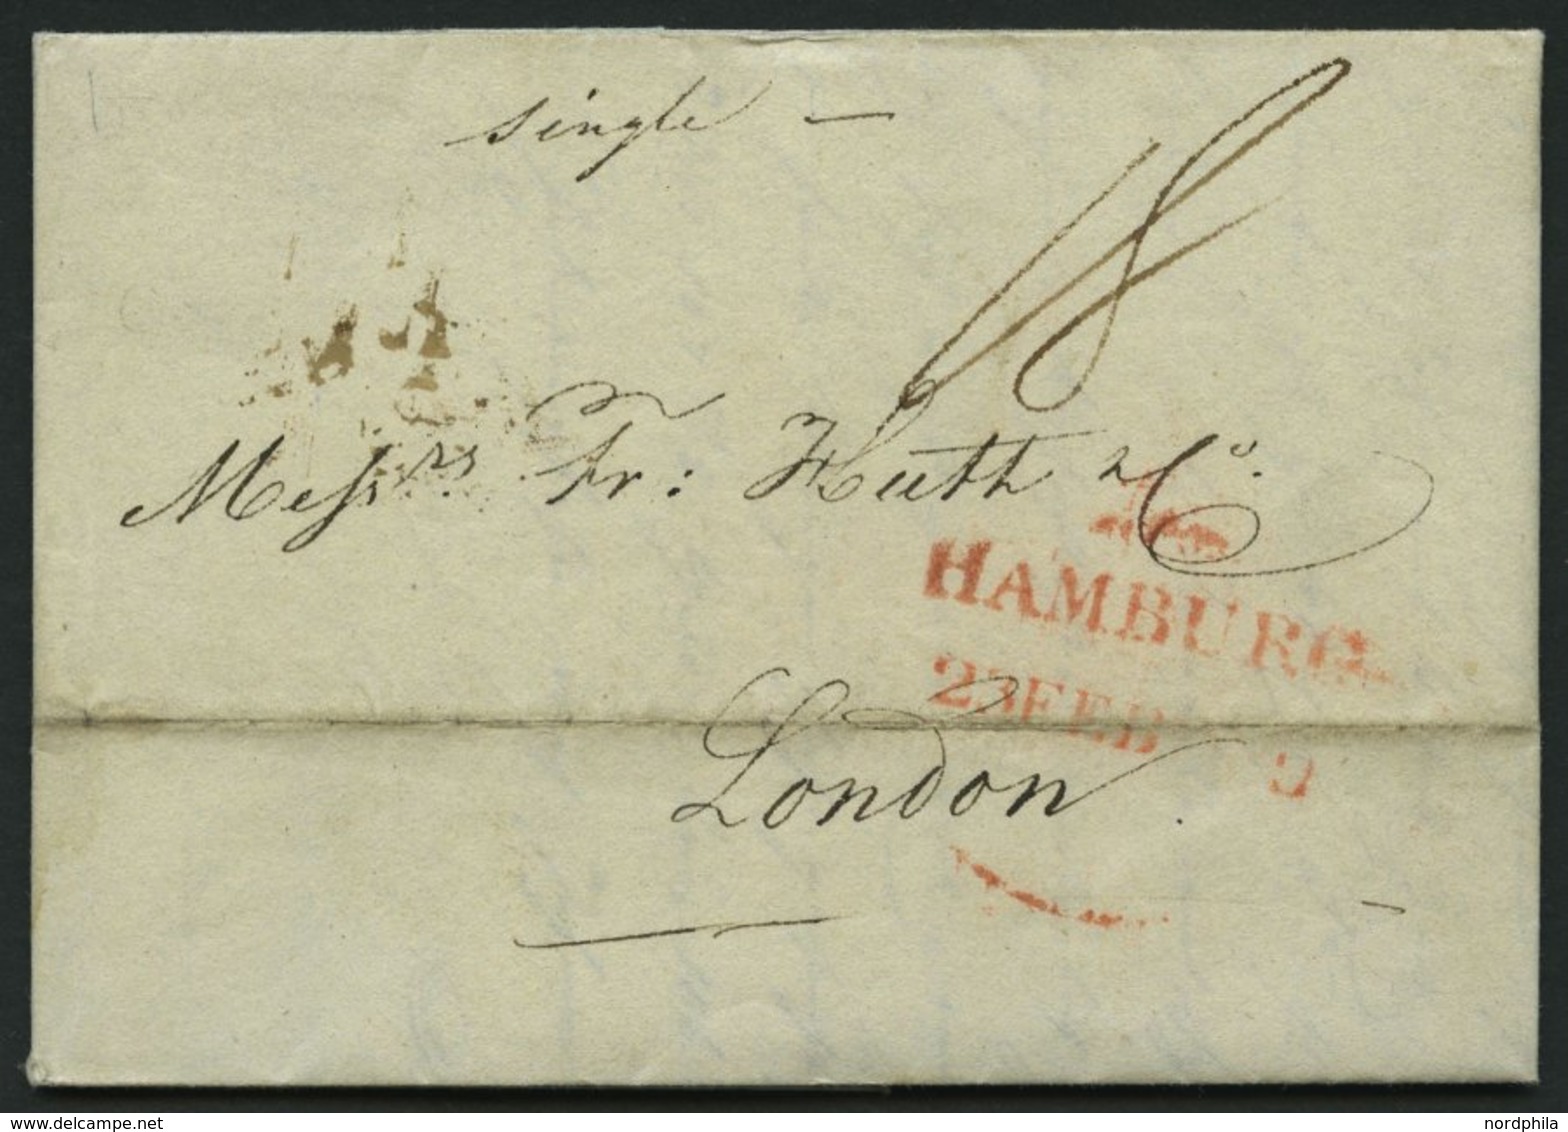 HAMBURG 1819, HAMBURG, Rote Sonderform Auf Brief, Handschriftlich Single, Nach London, Registraturbug, Feinst - [Voorlopers